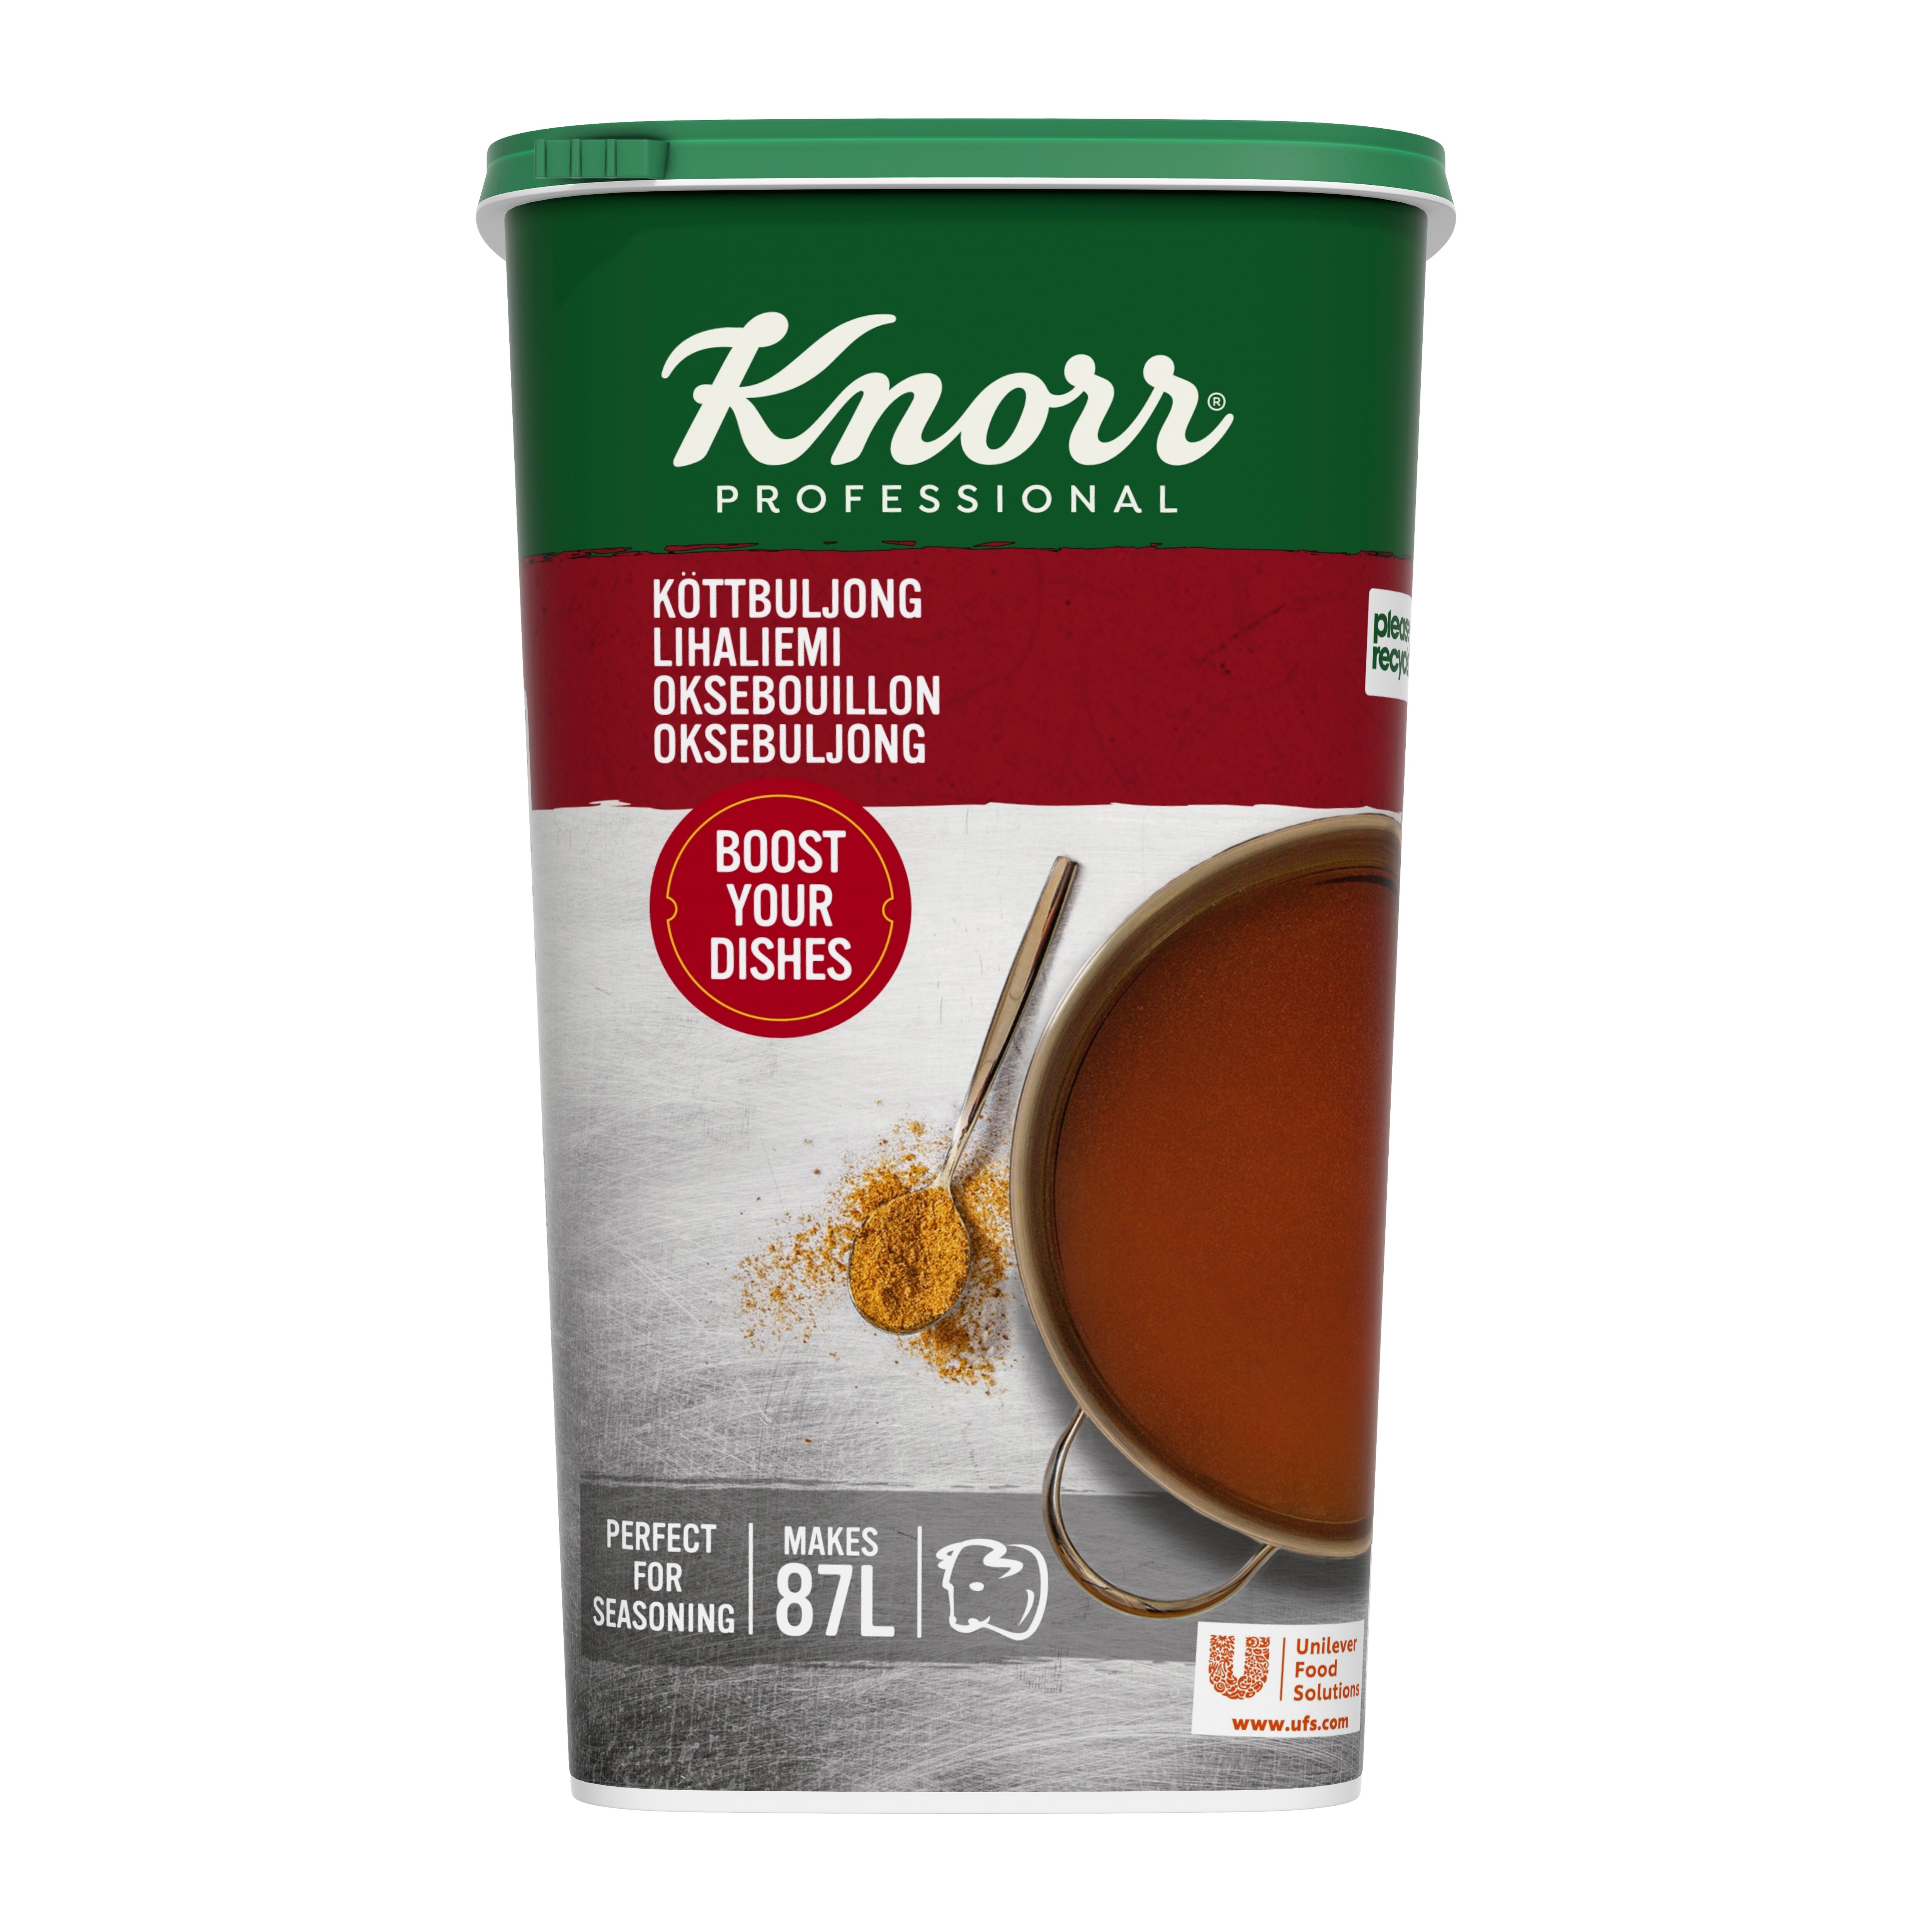 Knorr Lihaliemi 1,3 kg / 87 L - 